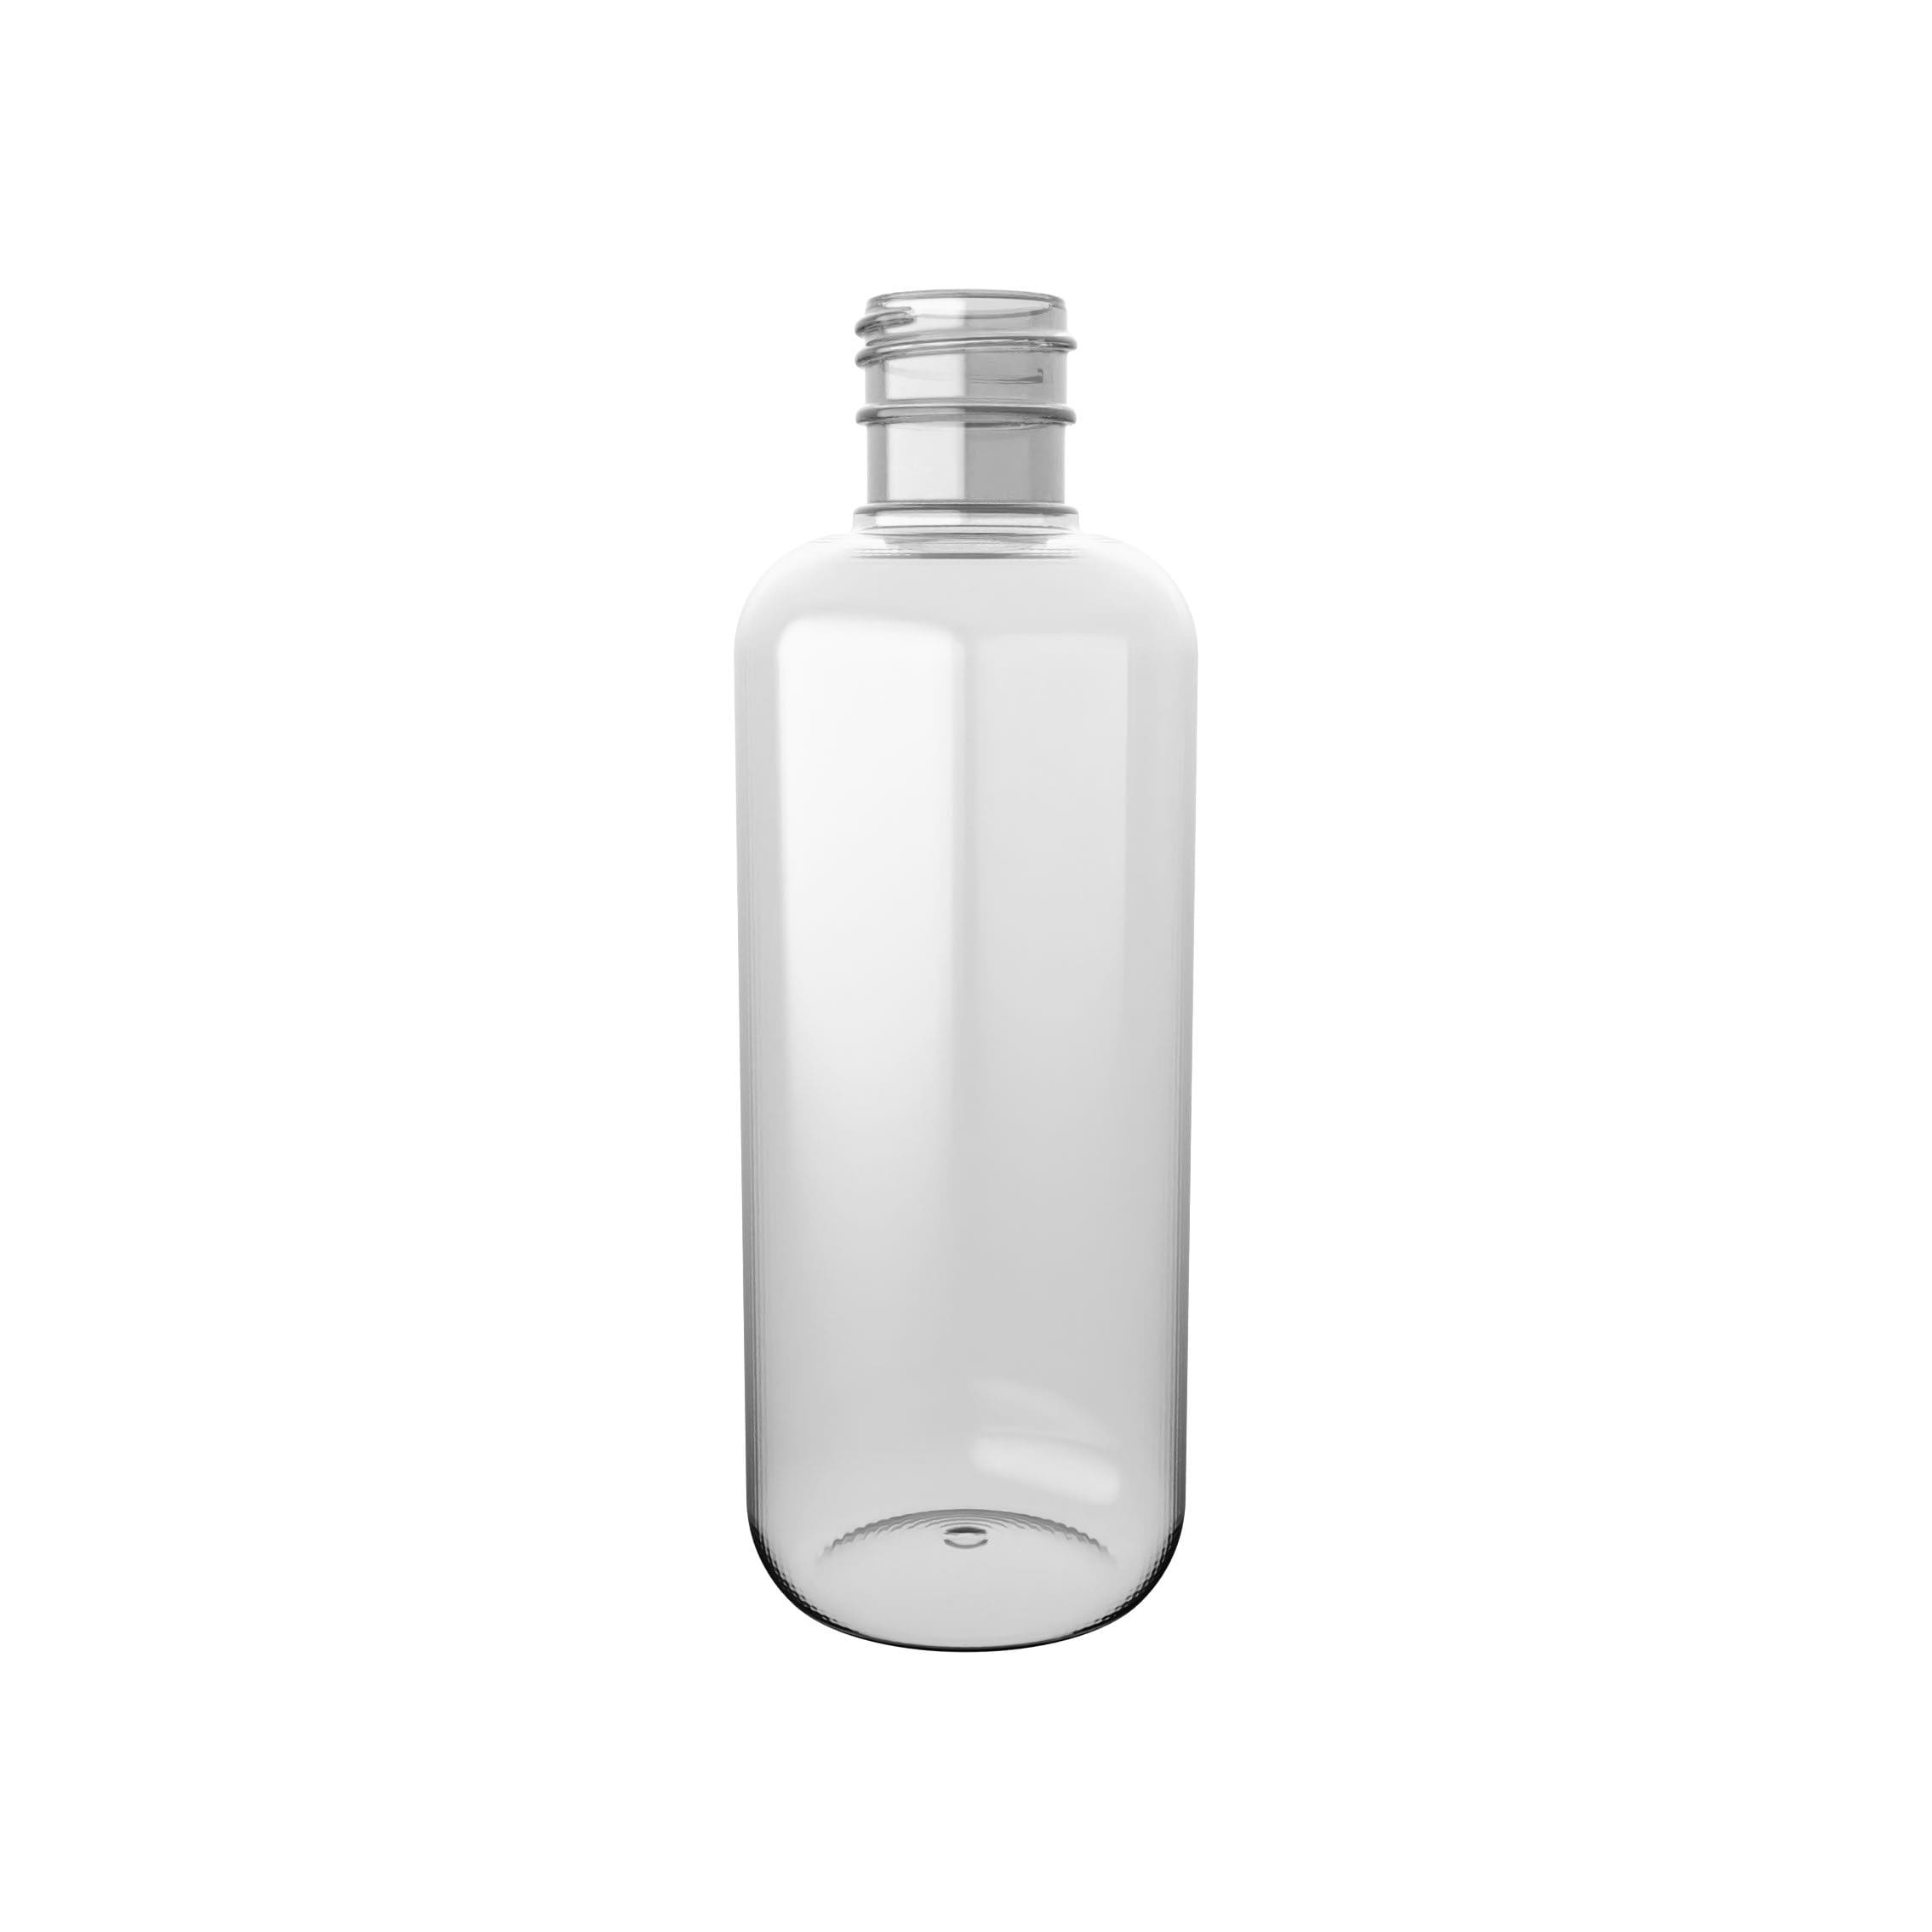 PET-Flasche OPTIMAX von EPROPLAST zum Befüllen von Pflegeprodukten.